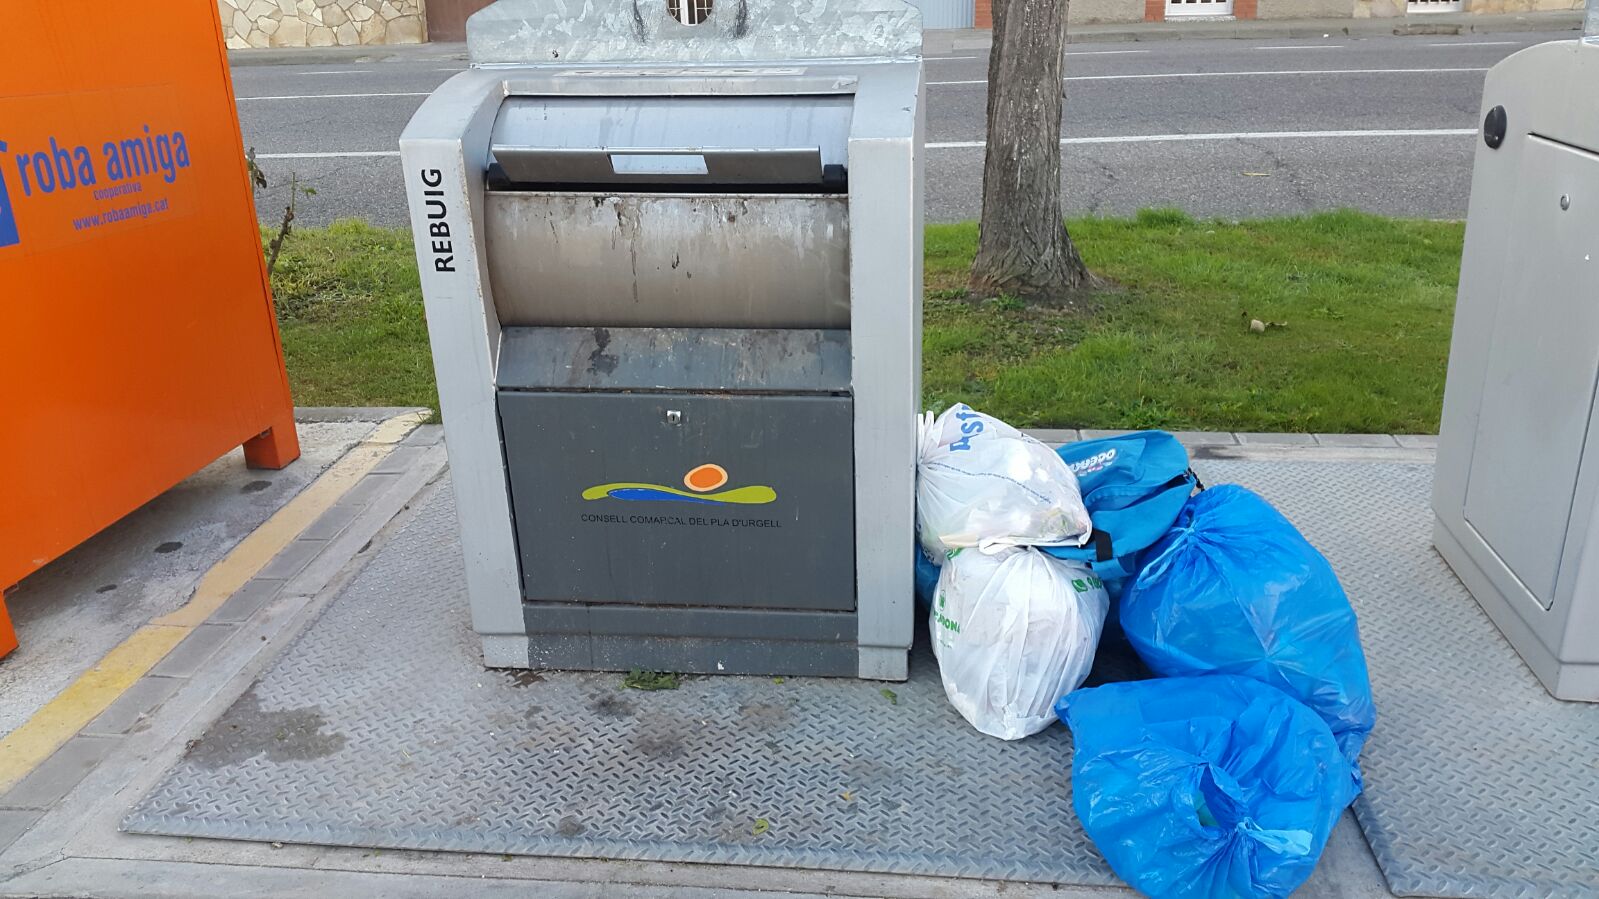 La campanya de recollida selectiva del Pla d’Urgell inicia la recerca de les “bosses perdudes”